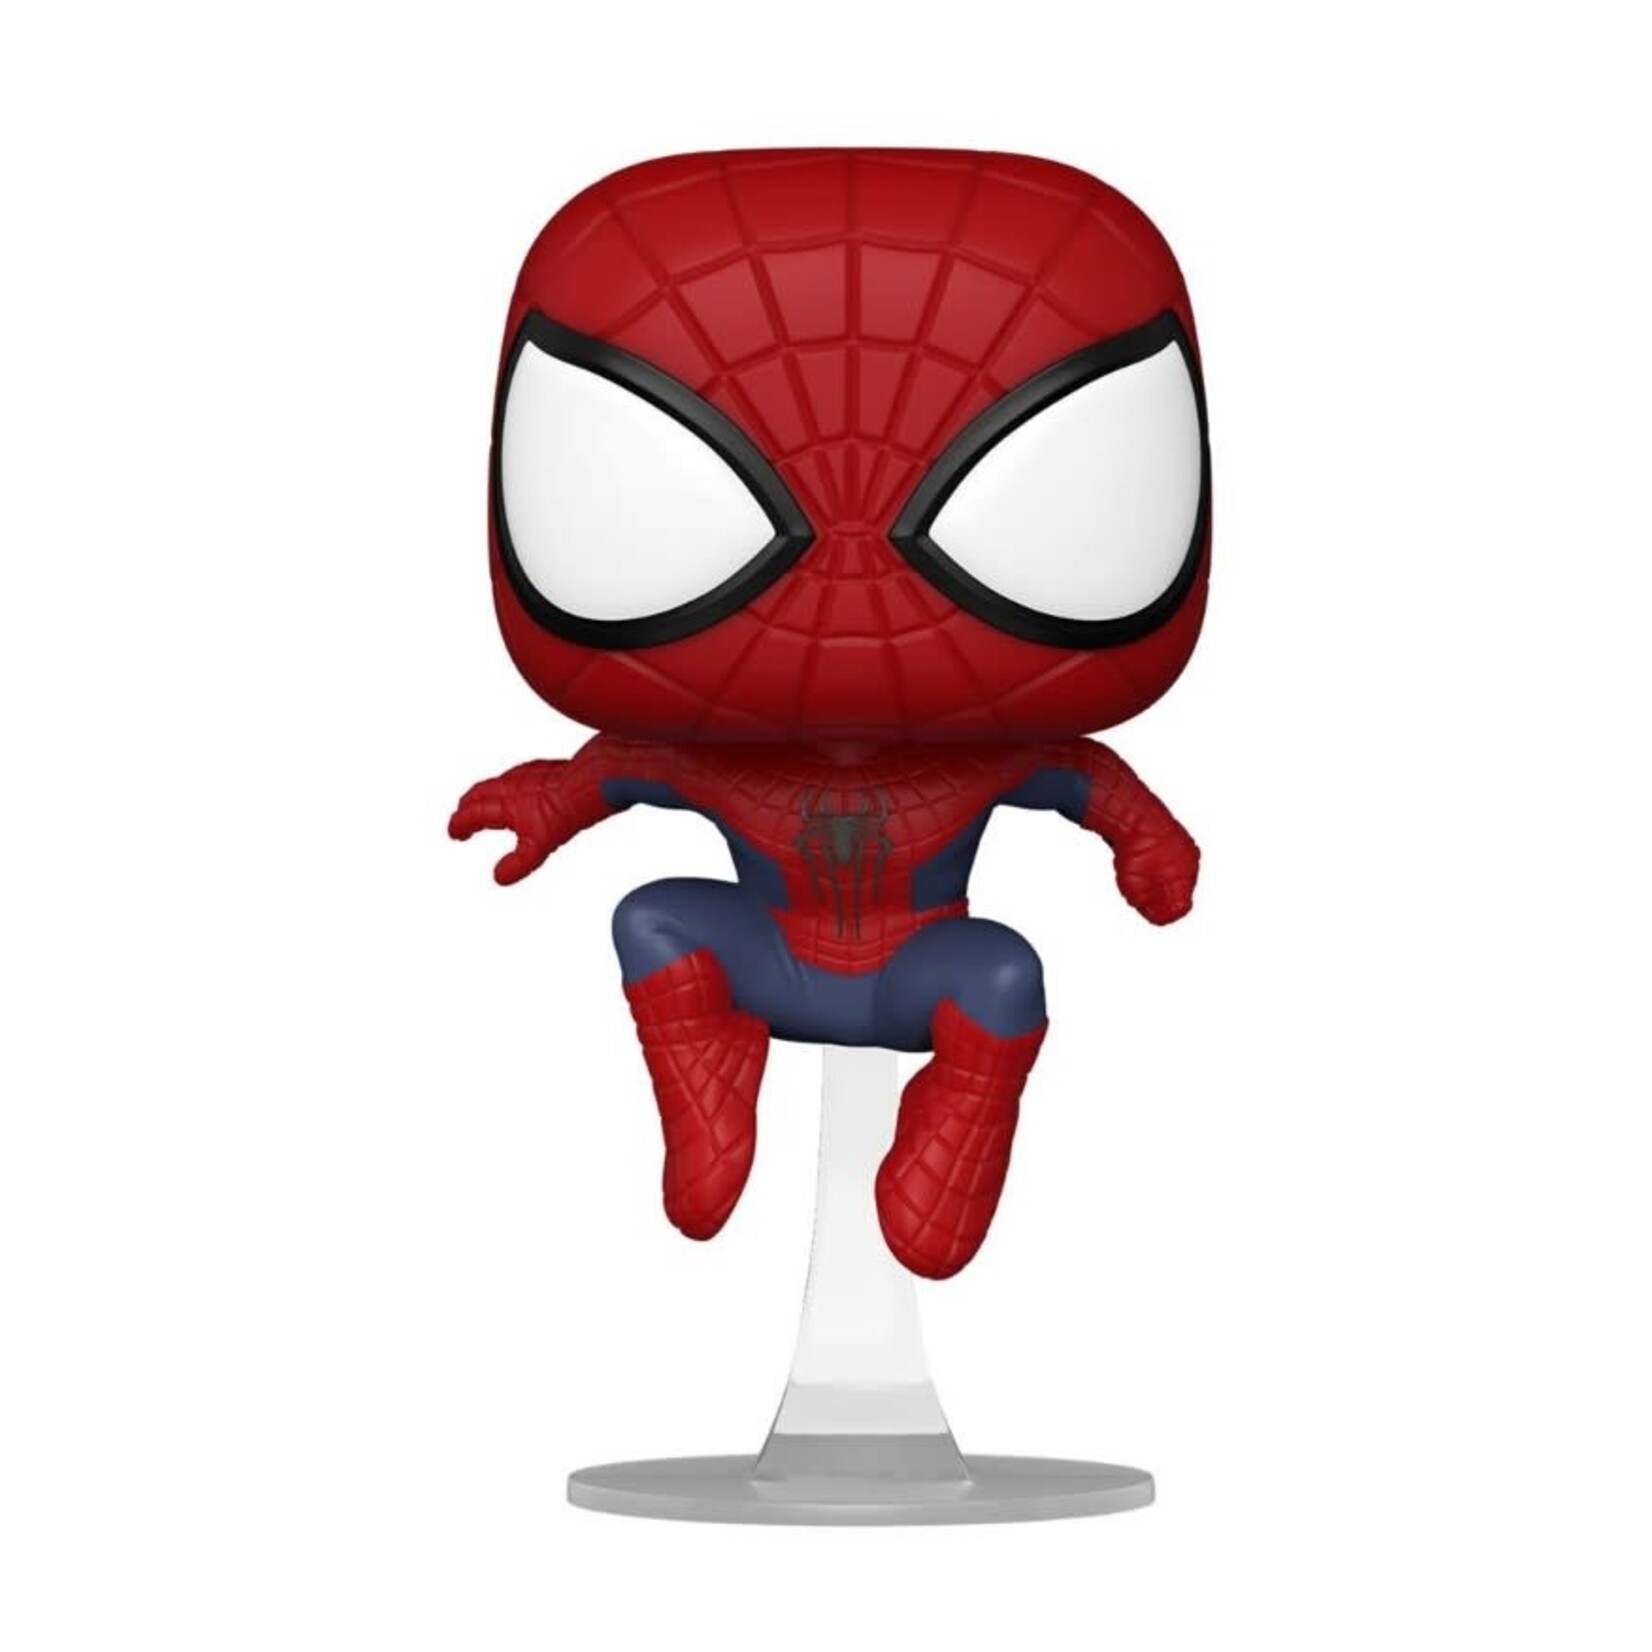 Spider-Man Spider-Man: No Way Home - The Amazing Spider-Man Funko Pop! Figure